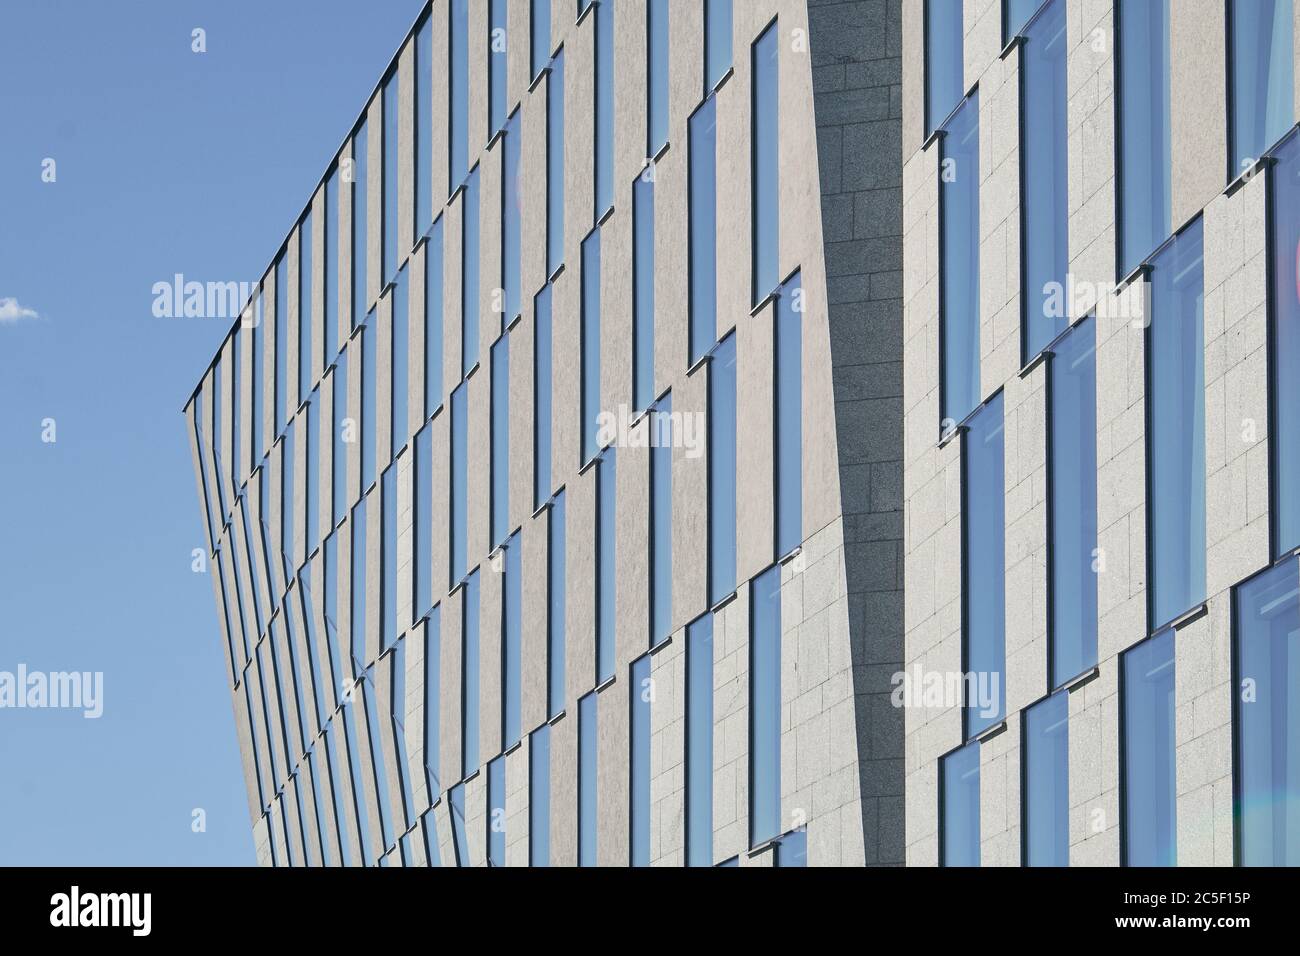 Die Fassade des modernen Gebäudes aus Glas, Metall und Stein in Finnland,  Helsinki Stockfotografie - Alamy